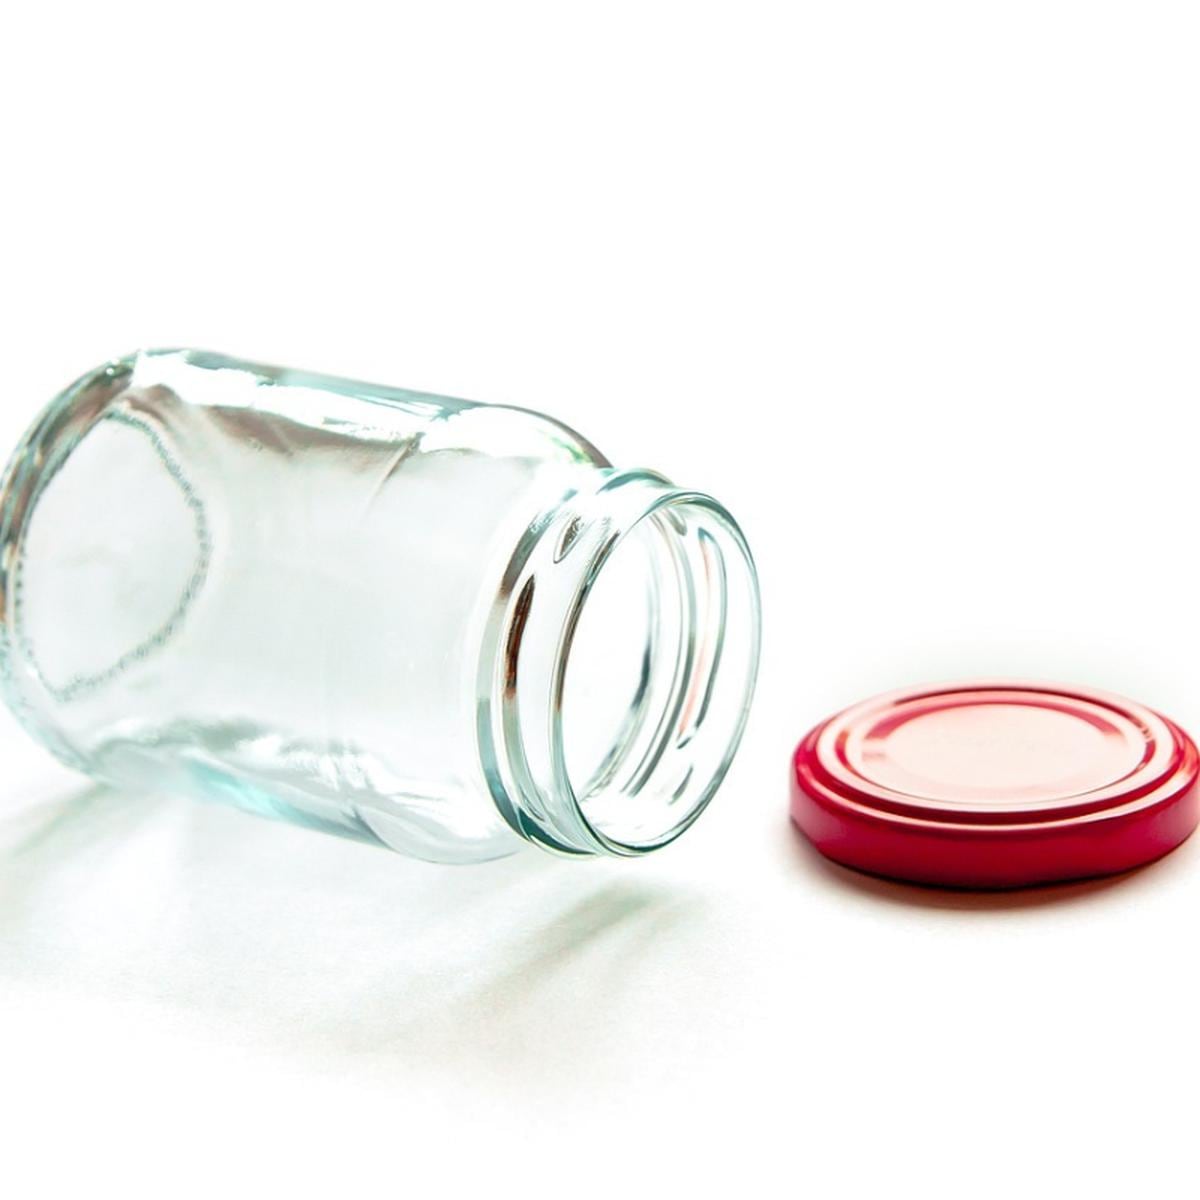 Reciclado de frascos para condimentos